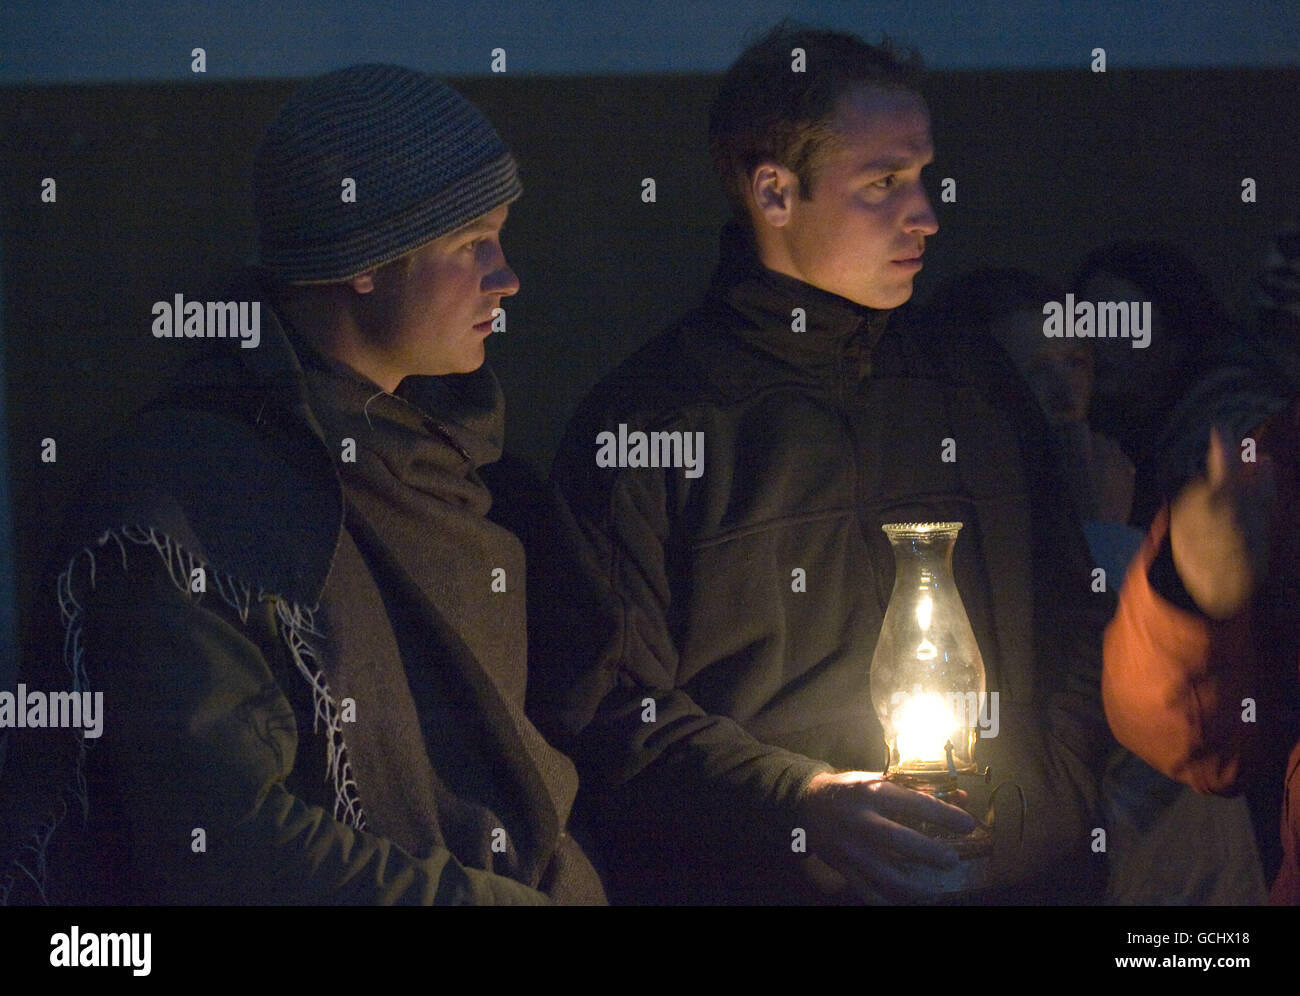 Le prince Harry et William visitent une salle de classe et regardent une leçon éclairée par des lampes à huile, pour les garçons de Herd à Semongkong à Lesoth. Banque D'Images